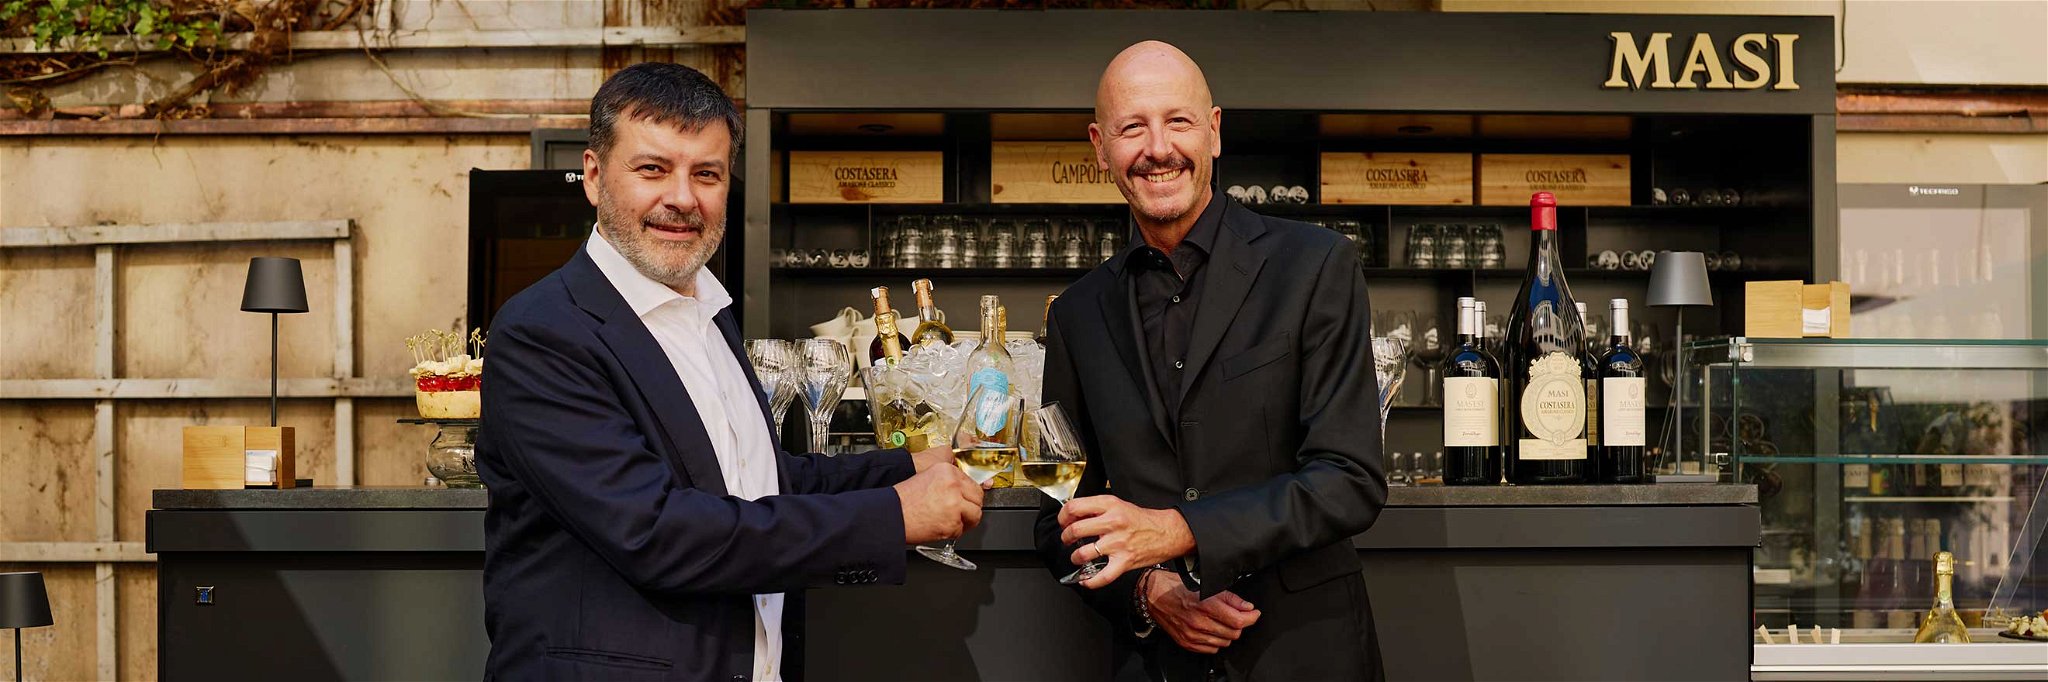 Für die Einweihung der neuen »Masi Wine Bar« reisten Marketingleiter Raffaele Boscaini aus der Eigentümerfamilie (l.) und Masi-CEO Federico Girotto persönlich nach München.&nbsp;